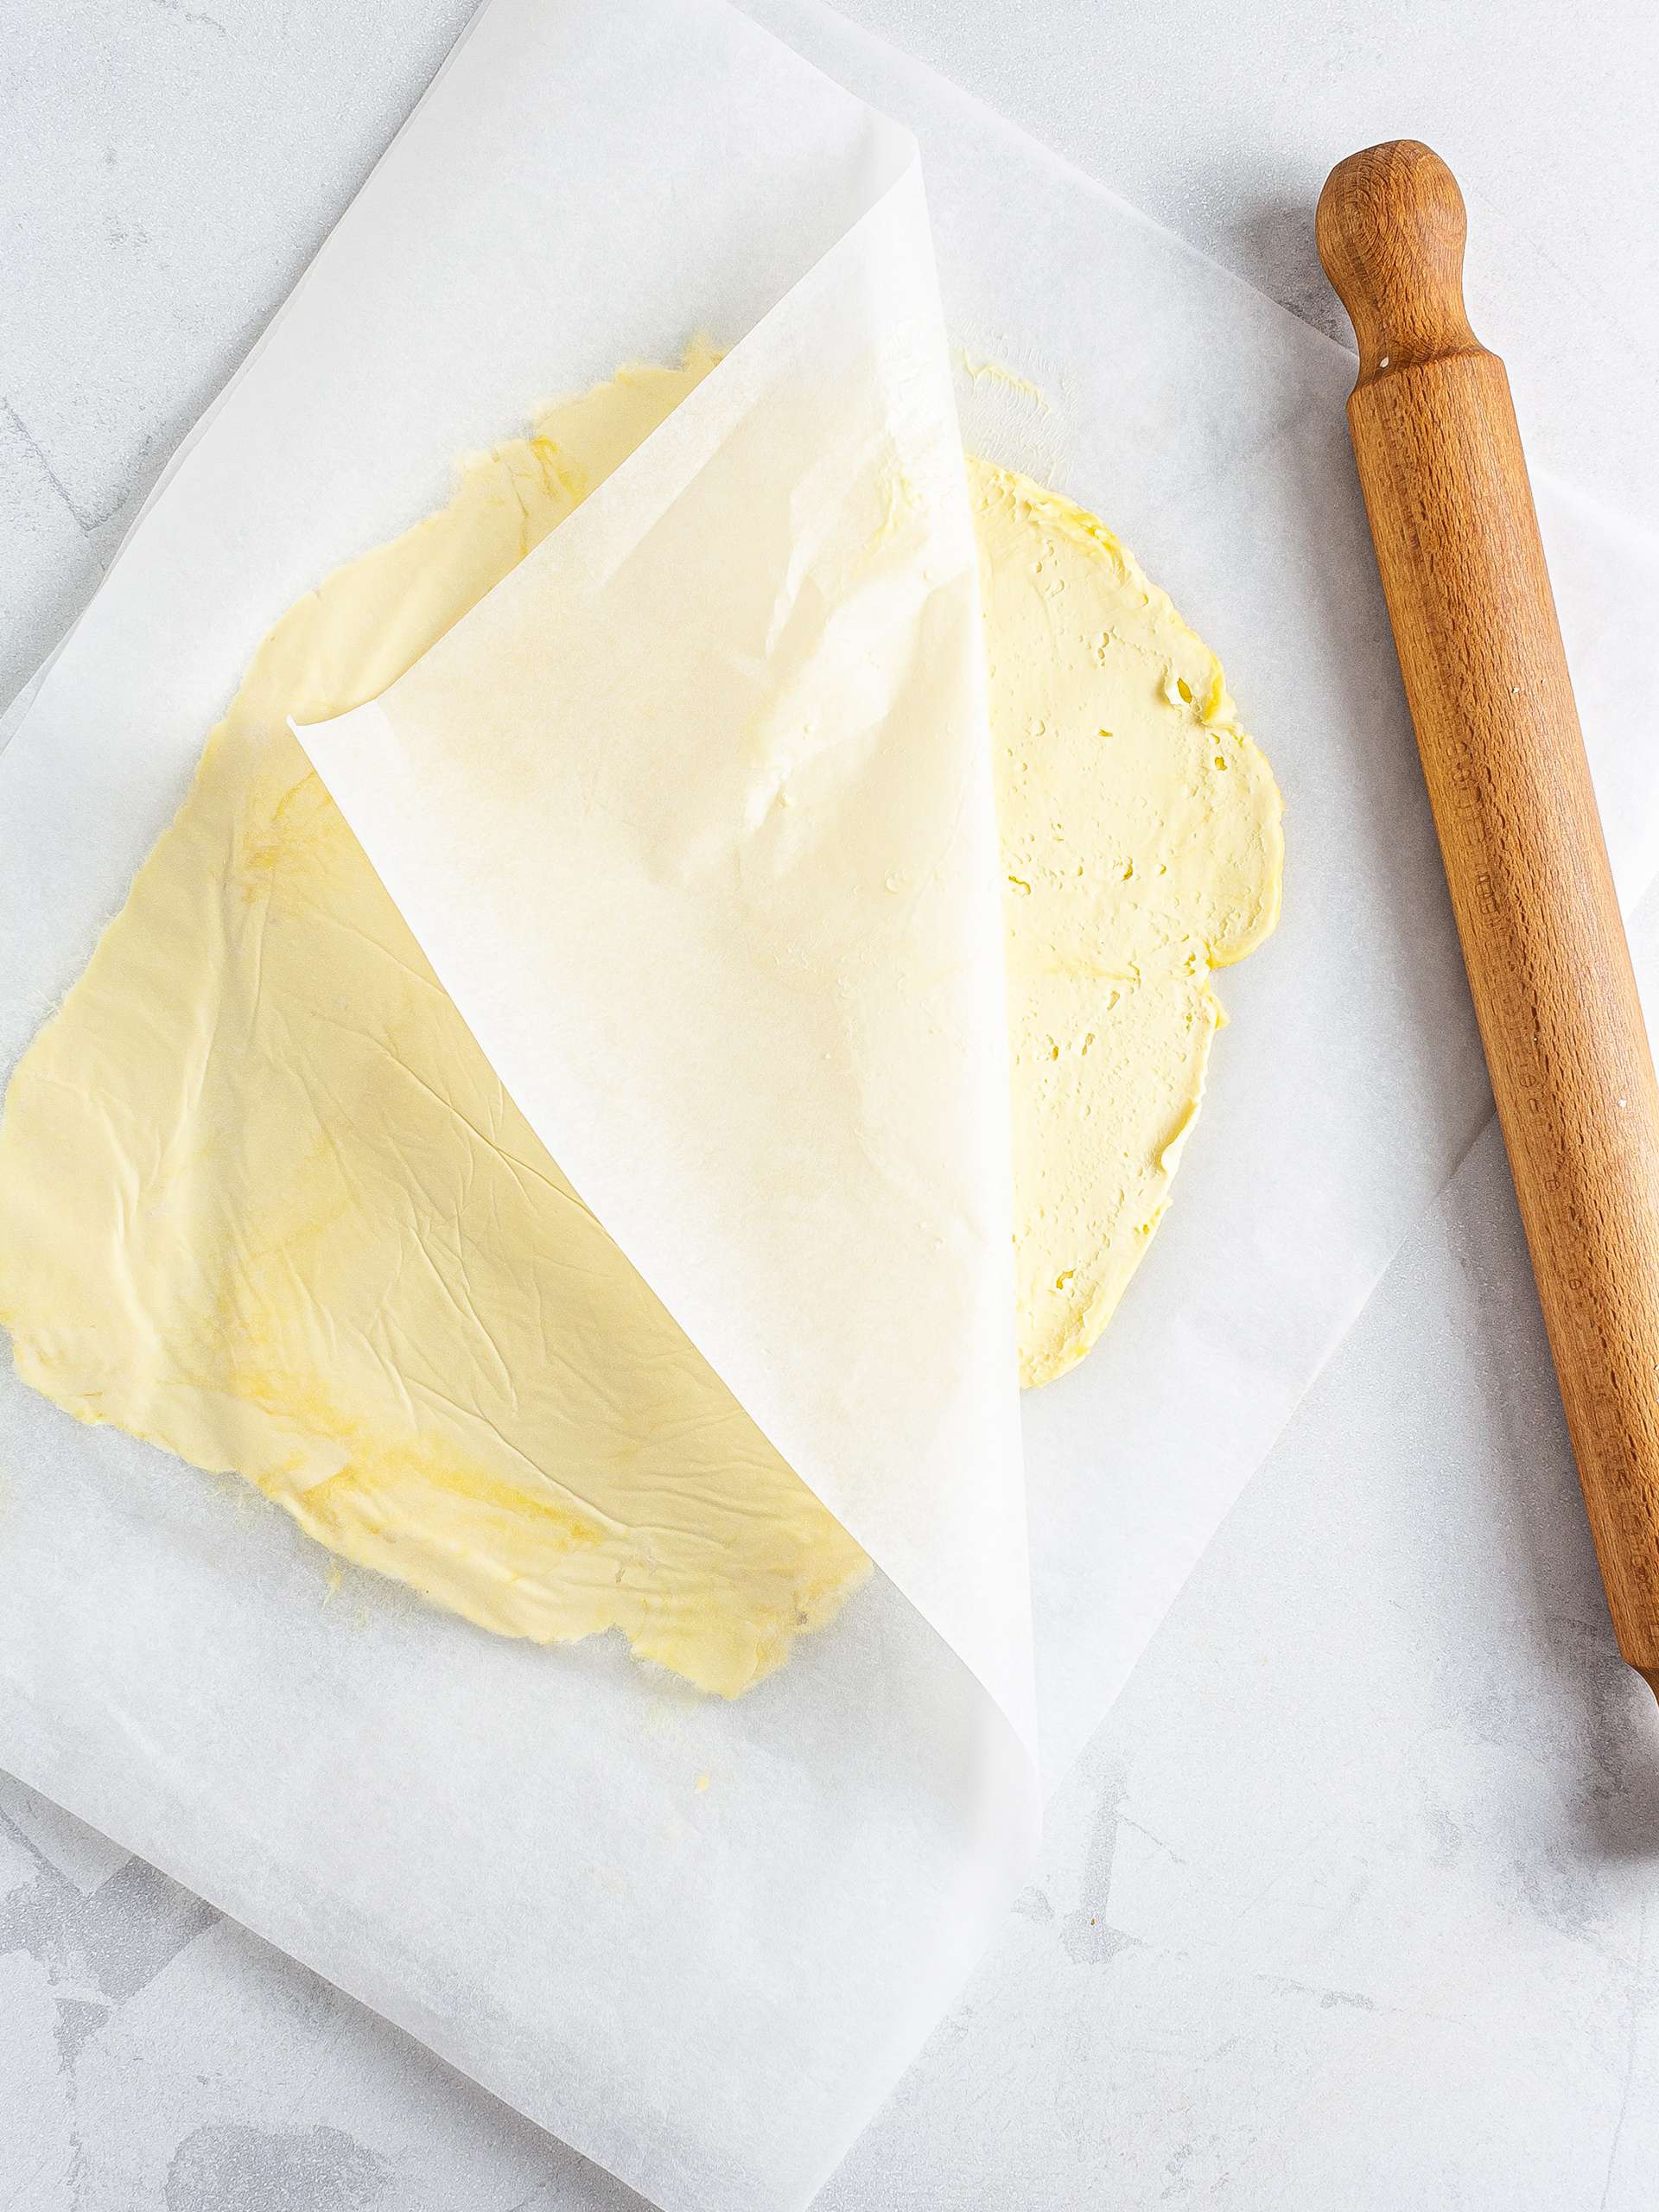 Vegan butter spread in between baking paper